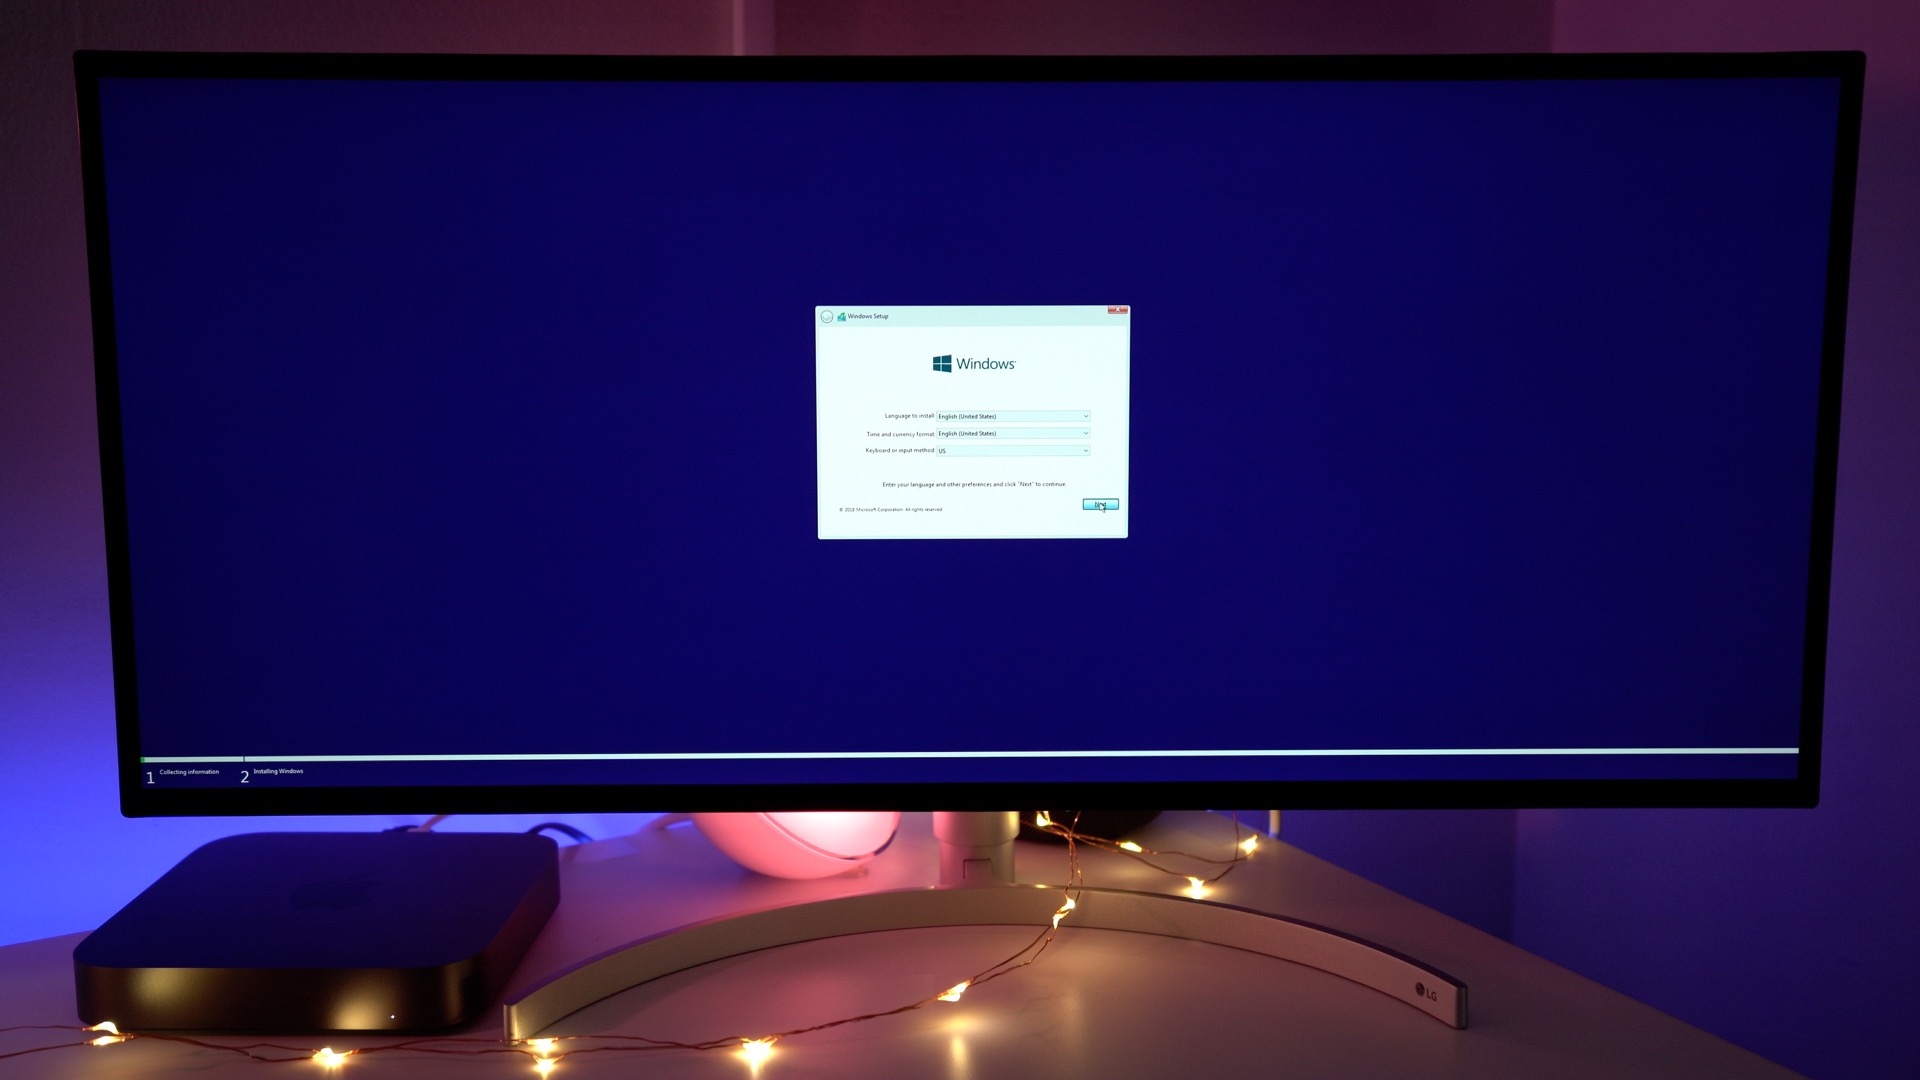 install windows xp mac mini